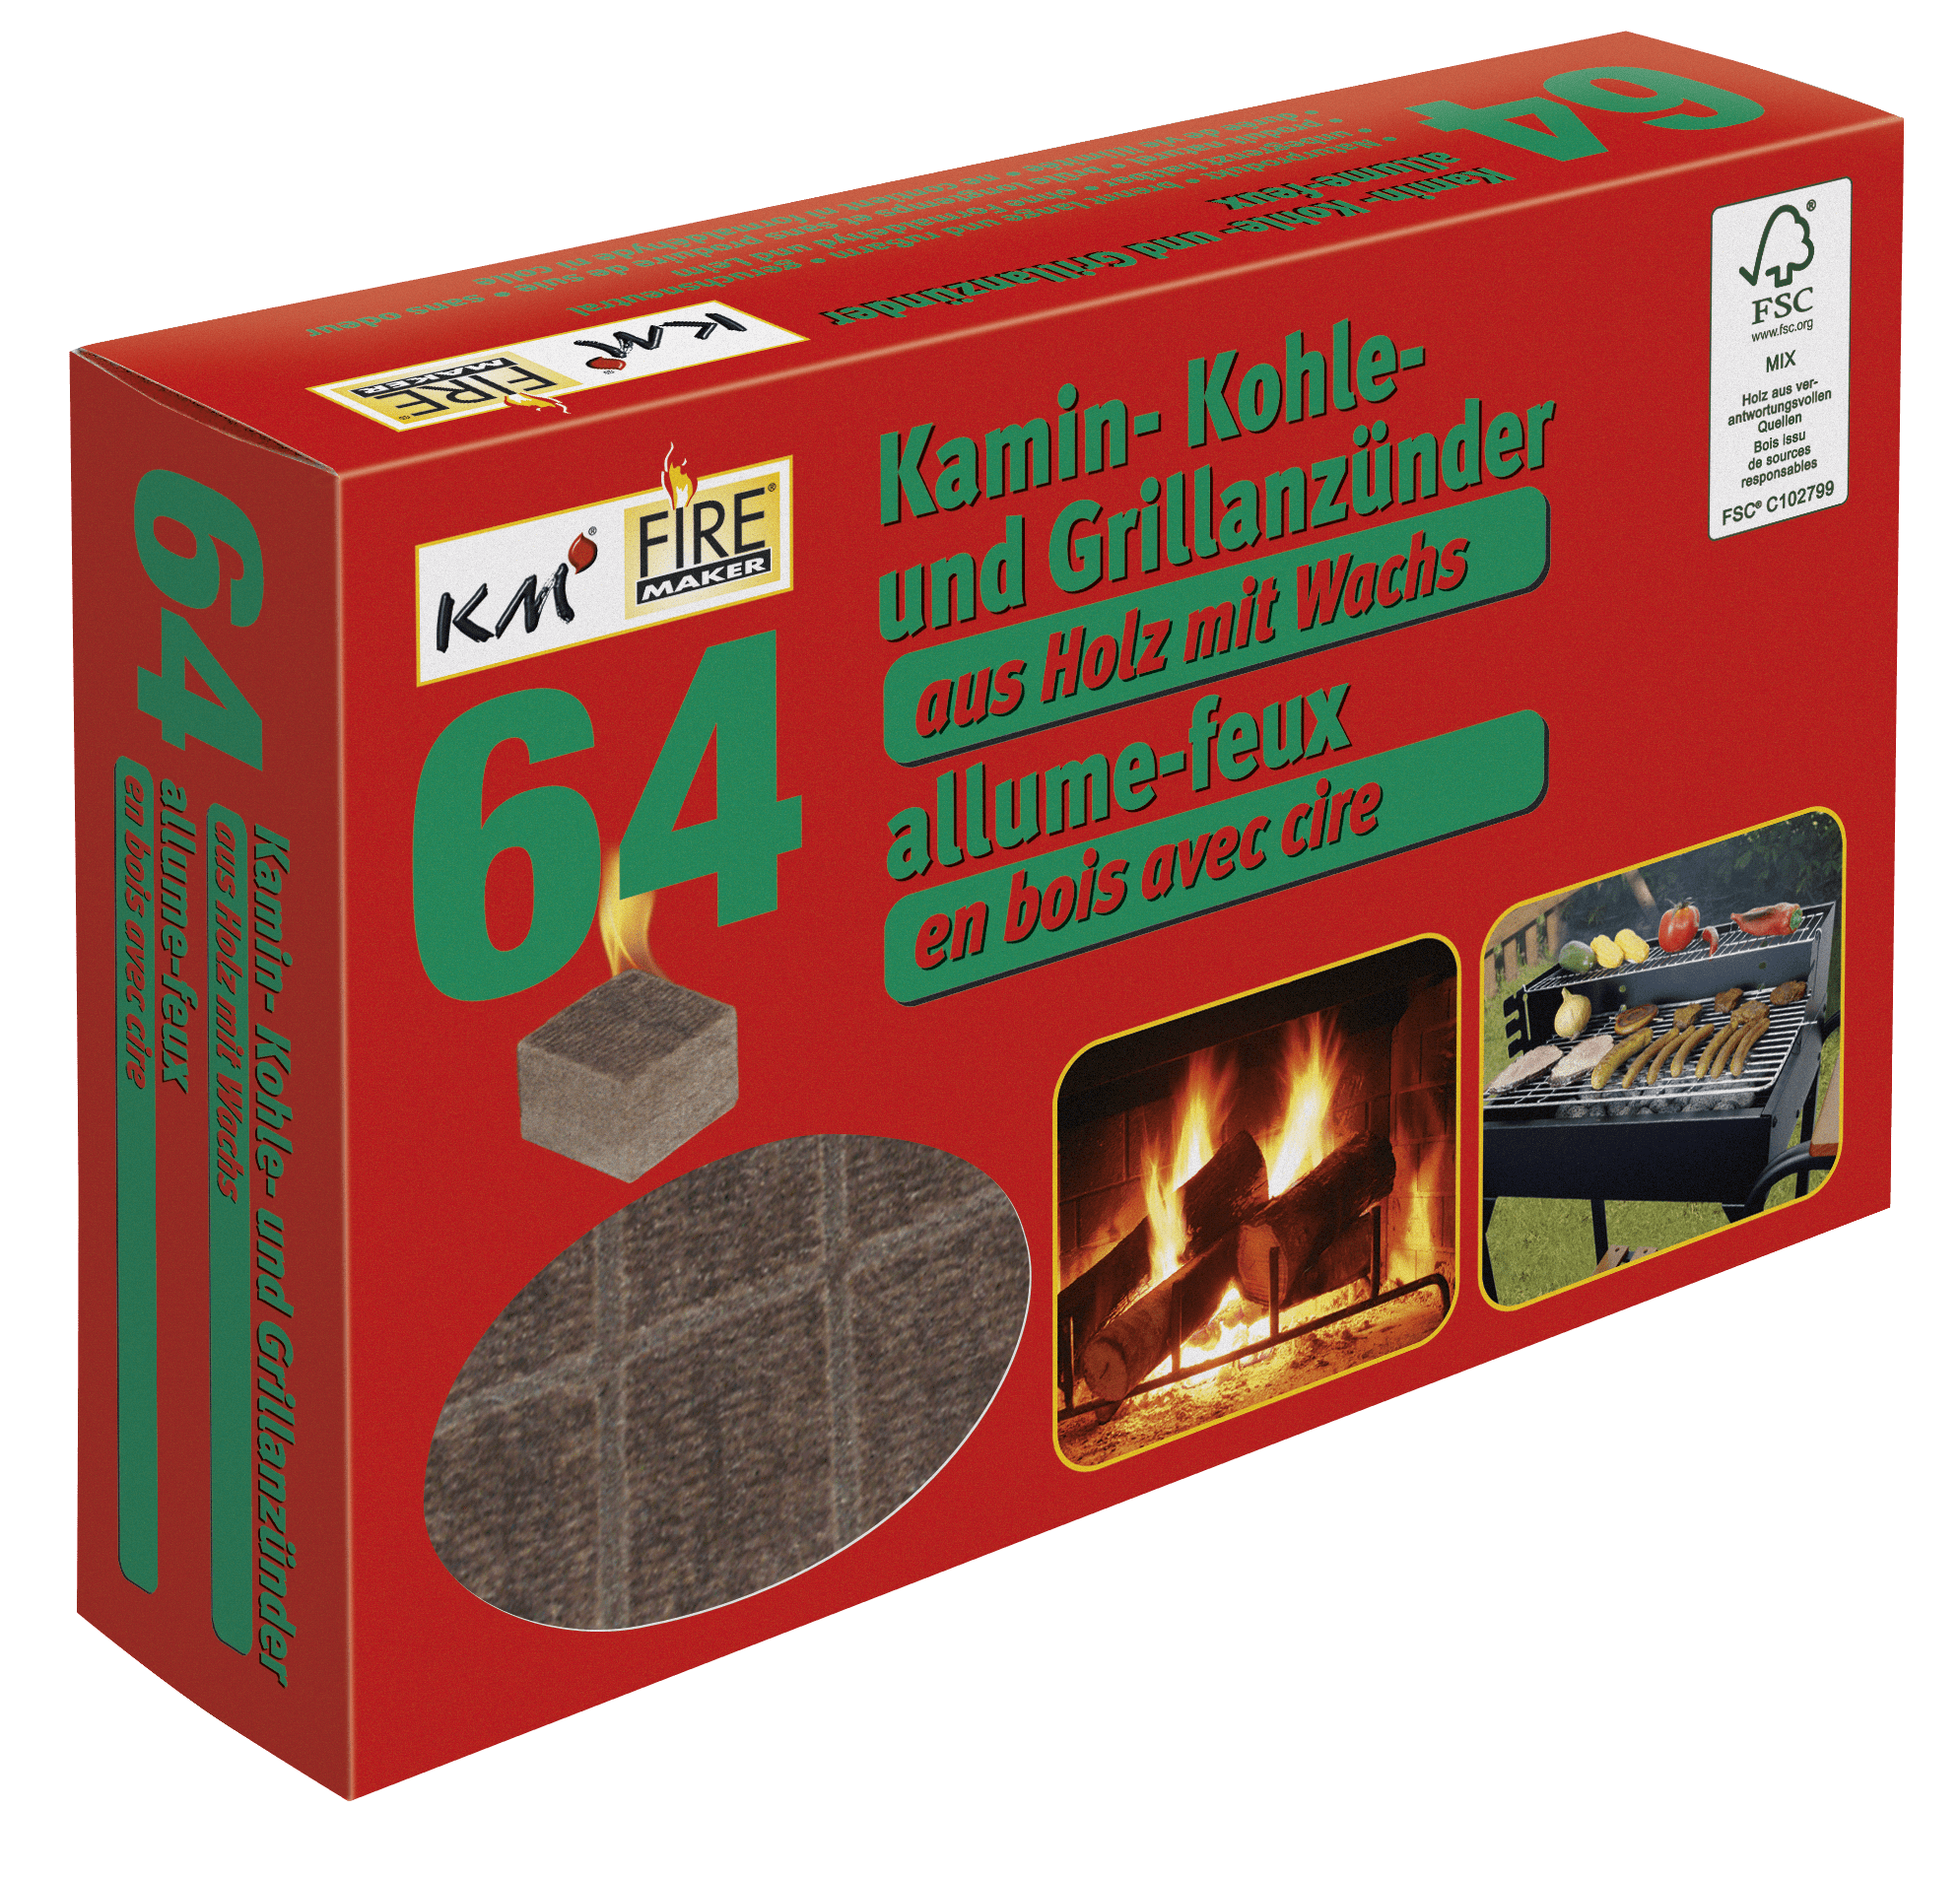 Allumeurs pour grill, charbon de bois et cheminée. 64 cubes allume-feux en bois avec cire, 2 plaques de 32